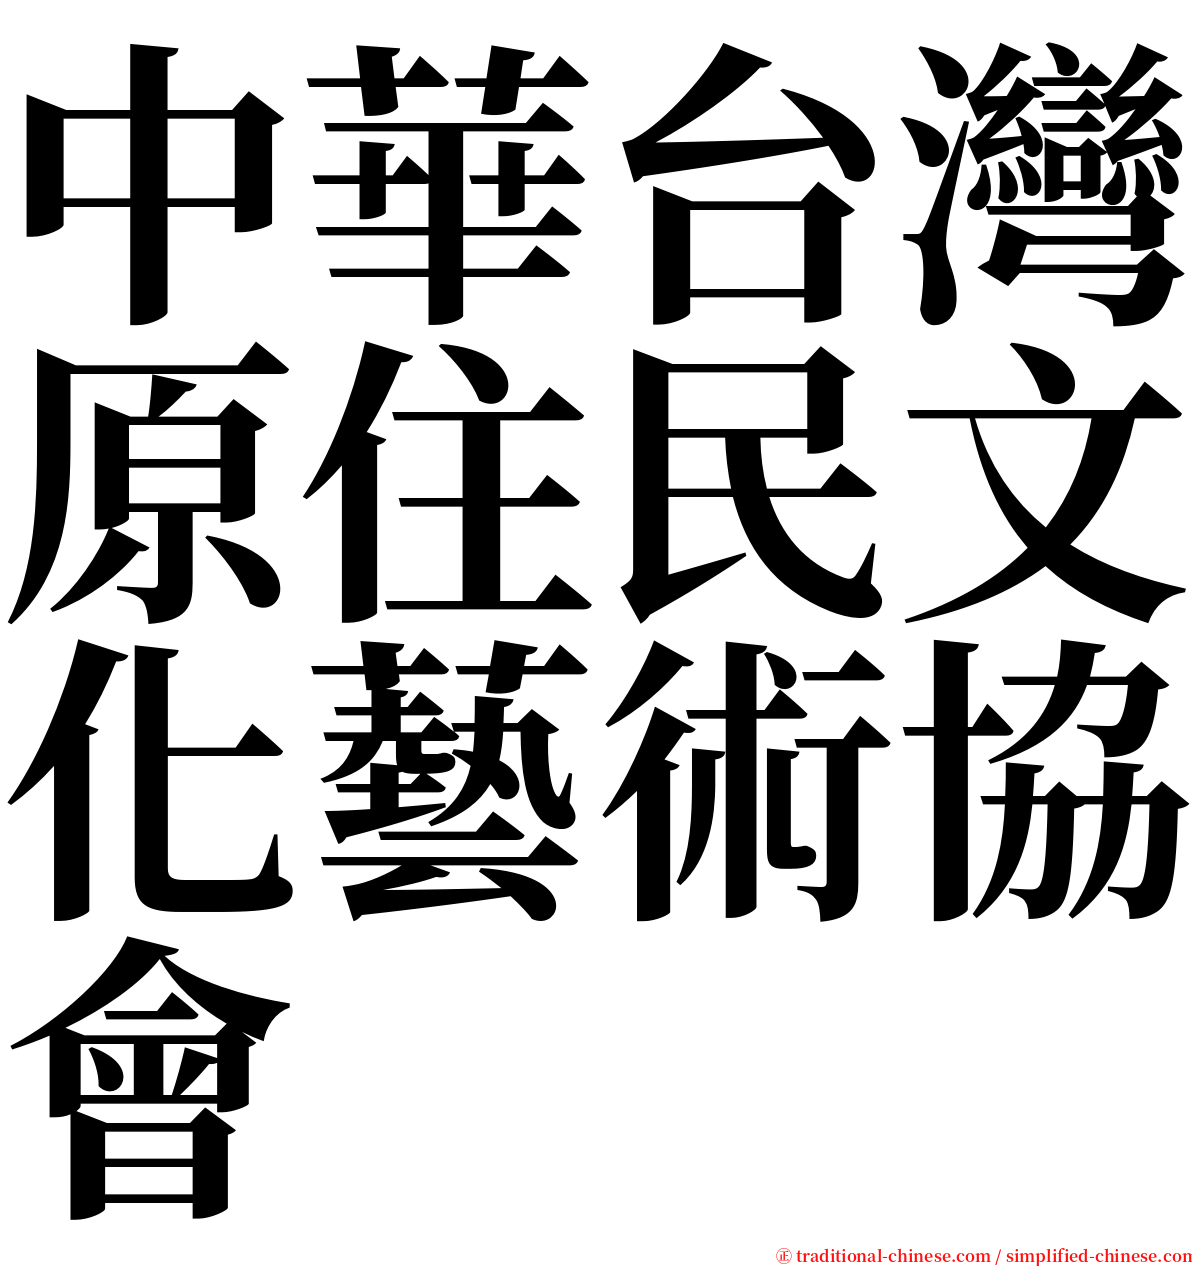 中華台灣原住民文化藝術協會 serif font